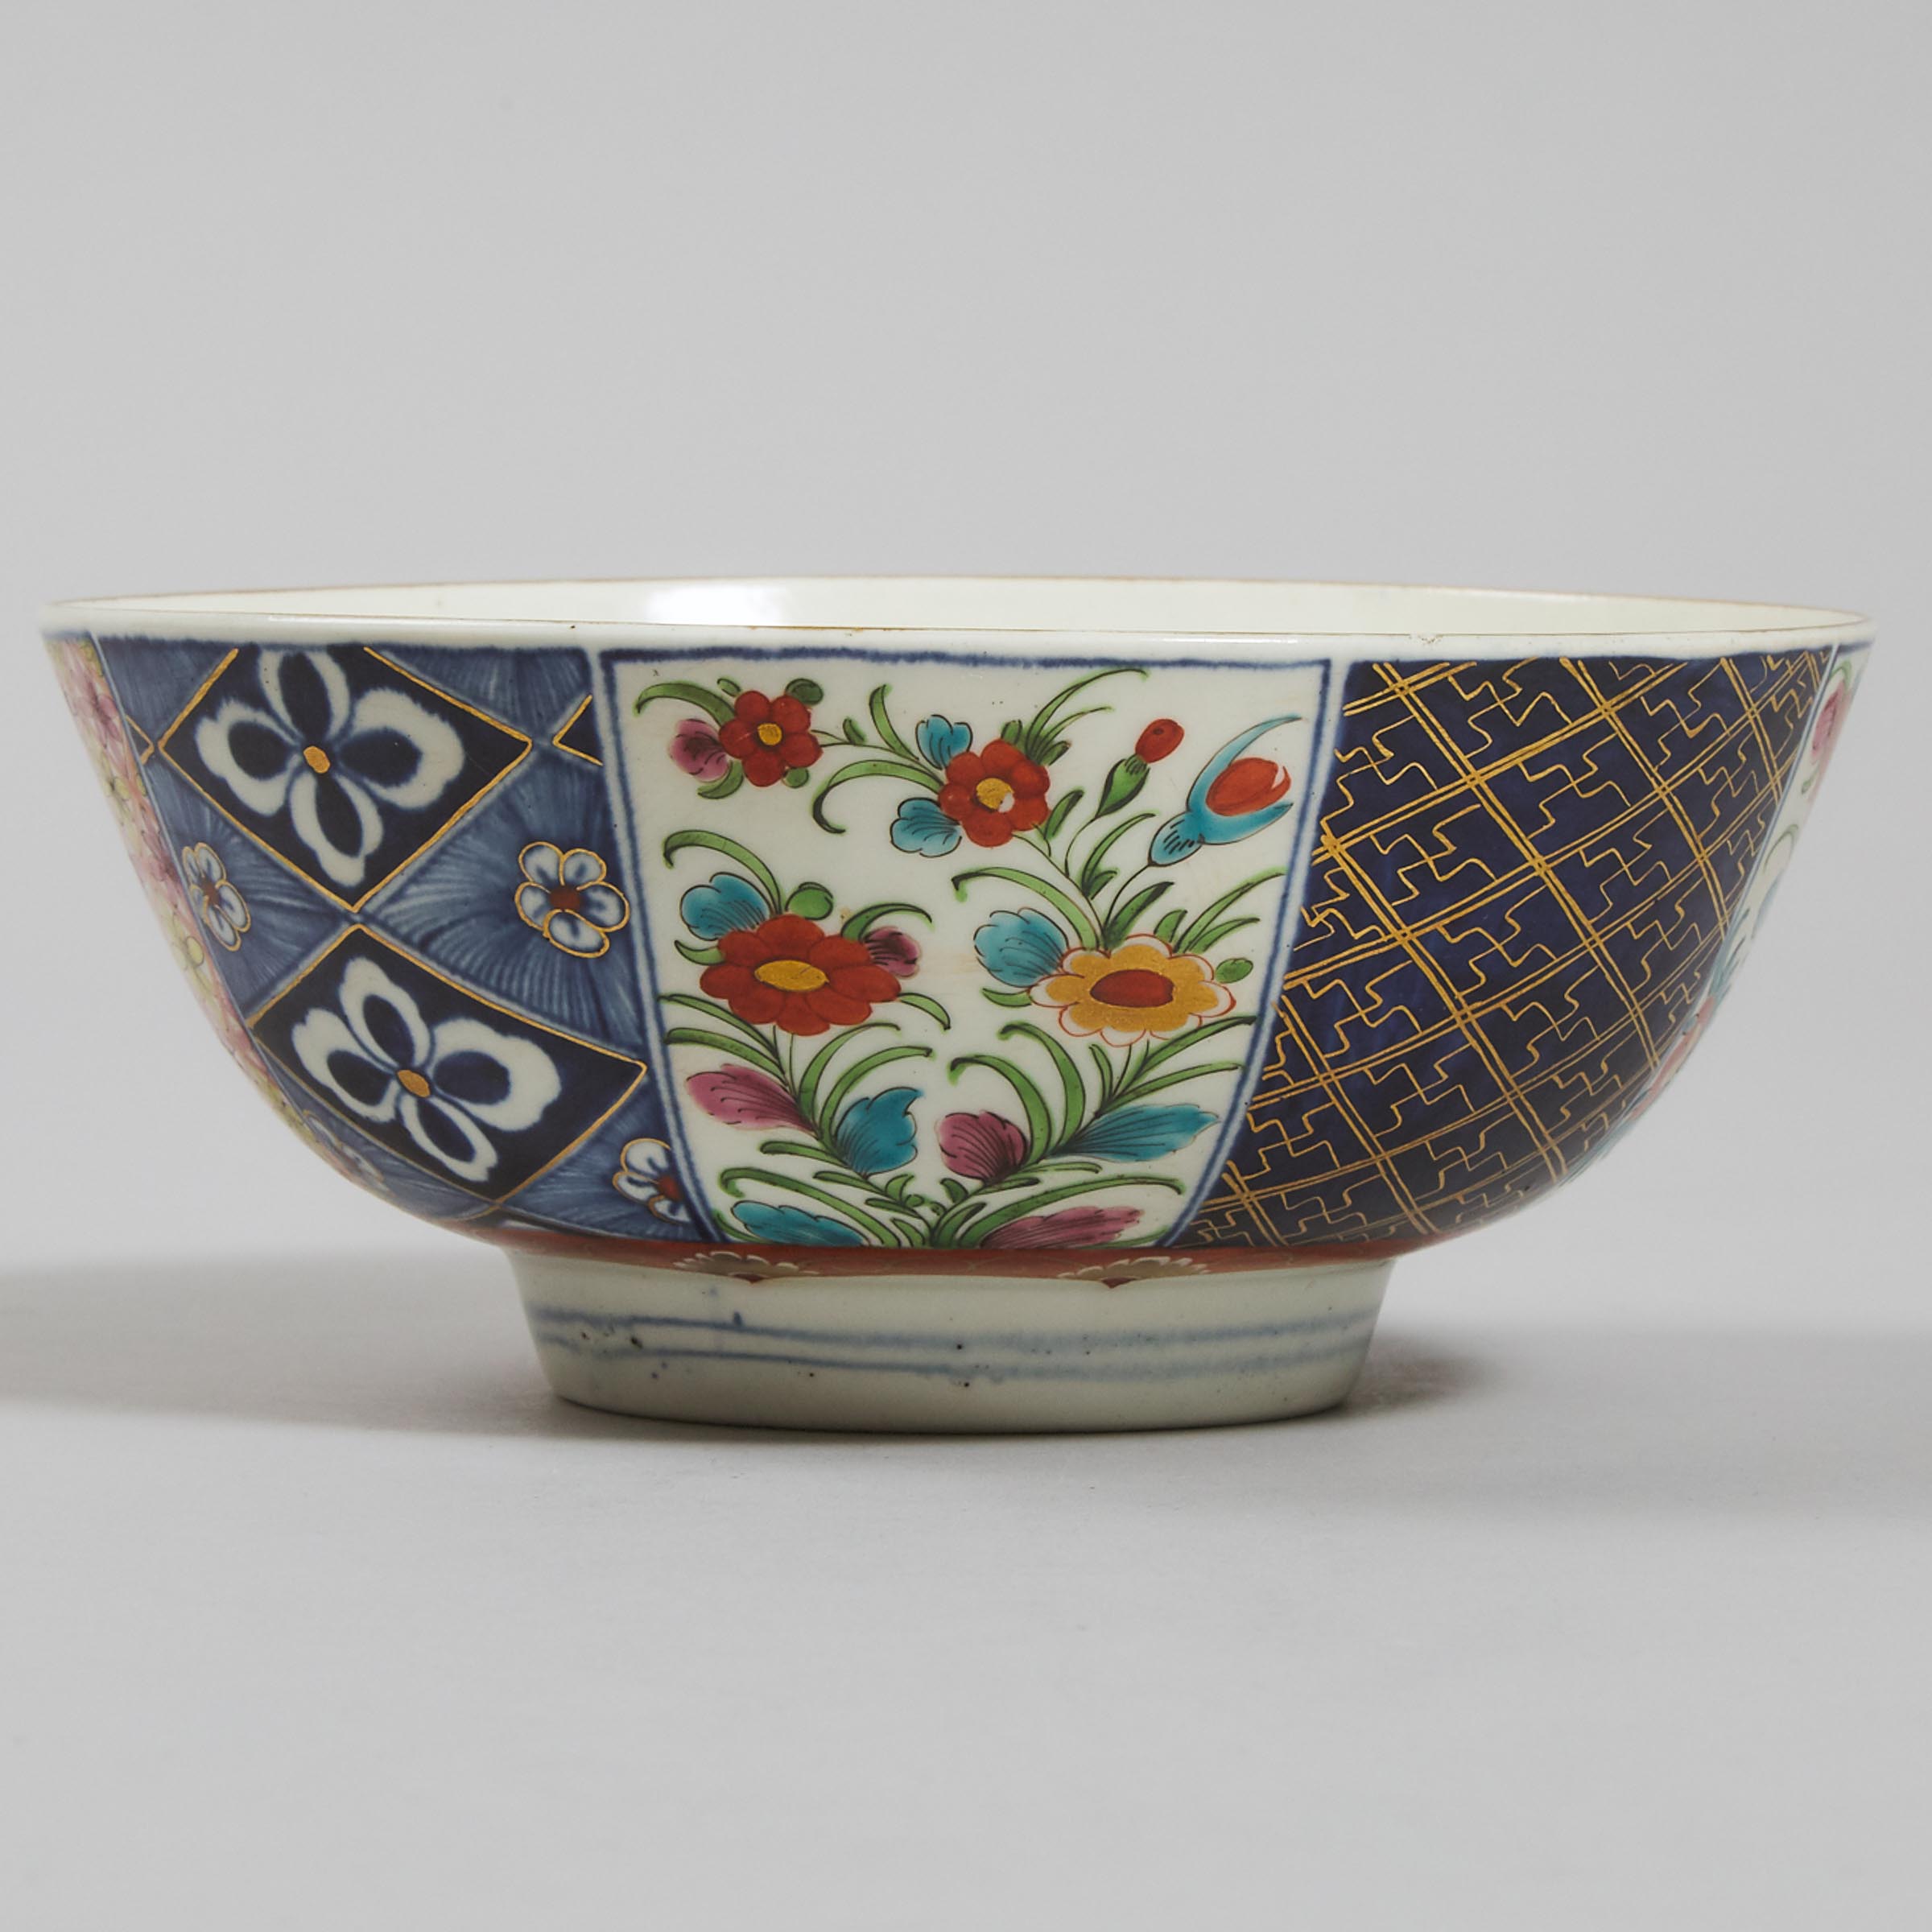 Worcester 'Old Mosaic' Japan Pattern Bowl, c.1770-75